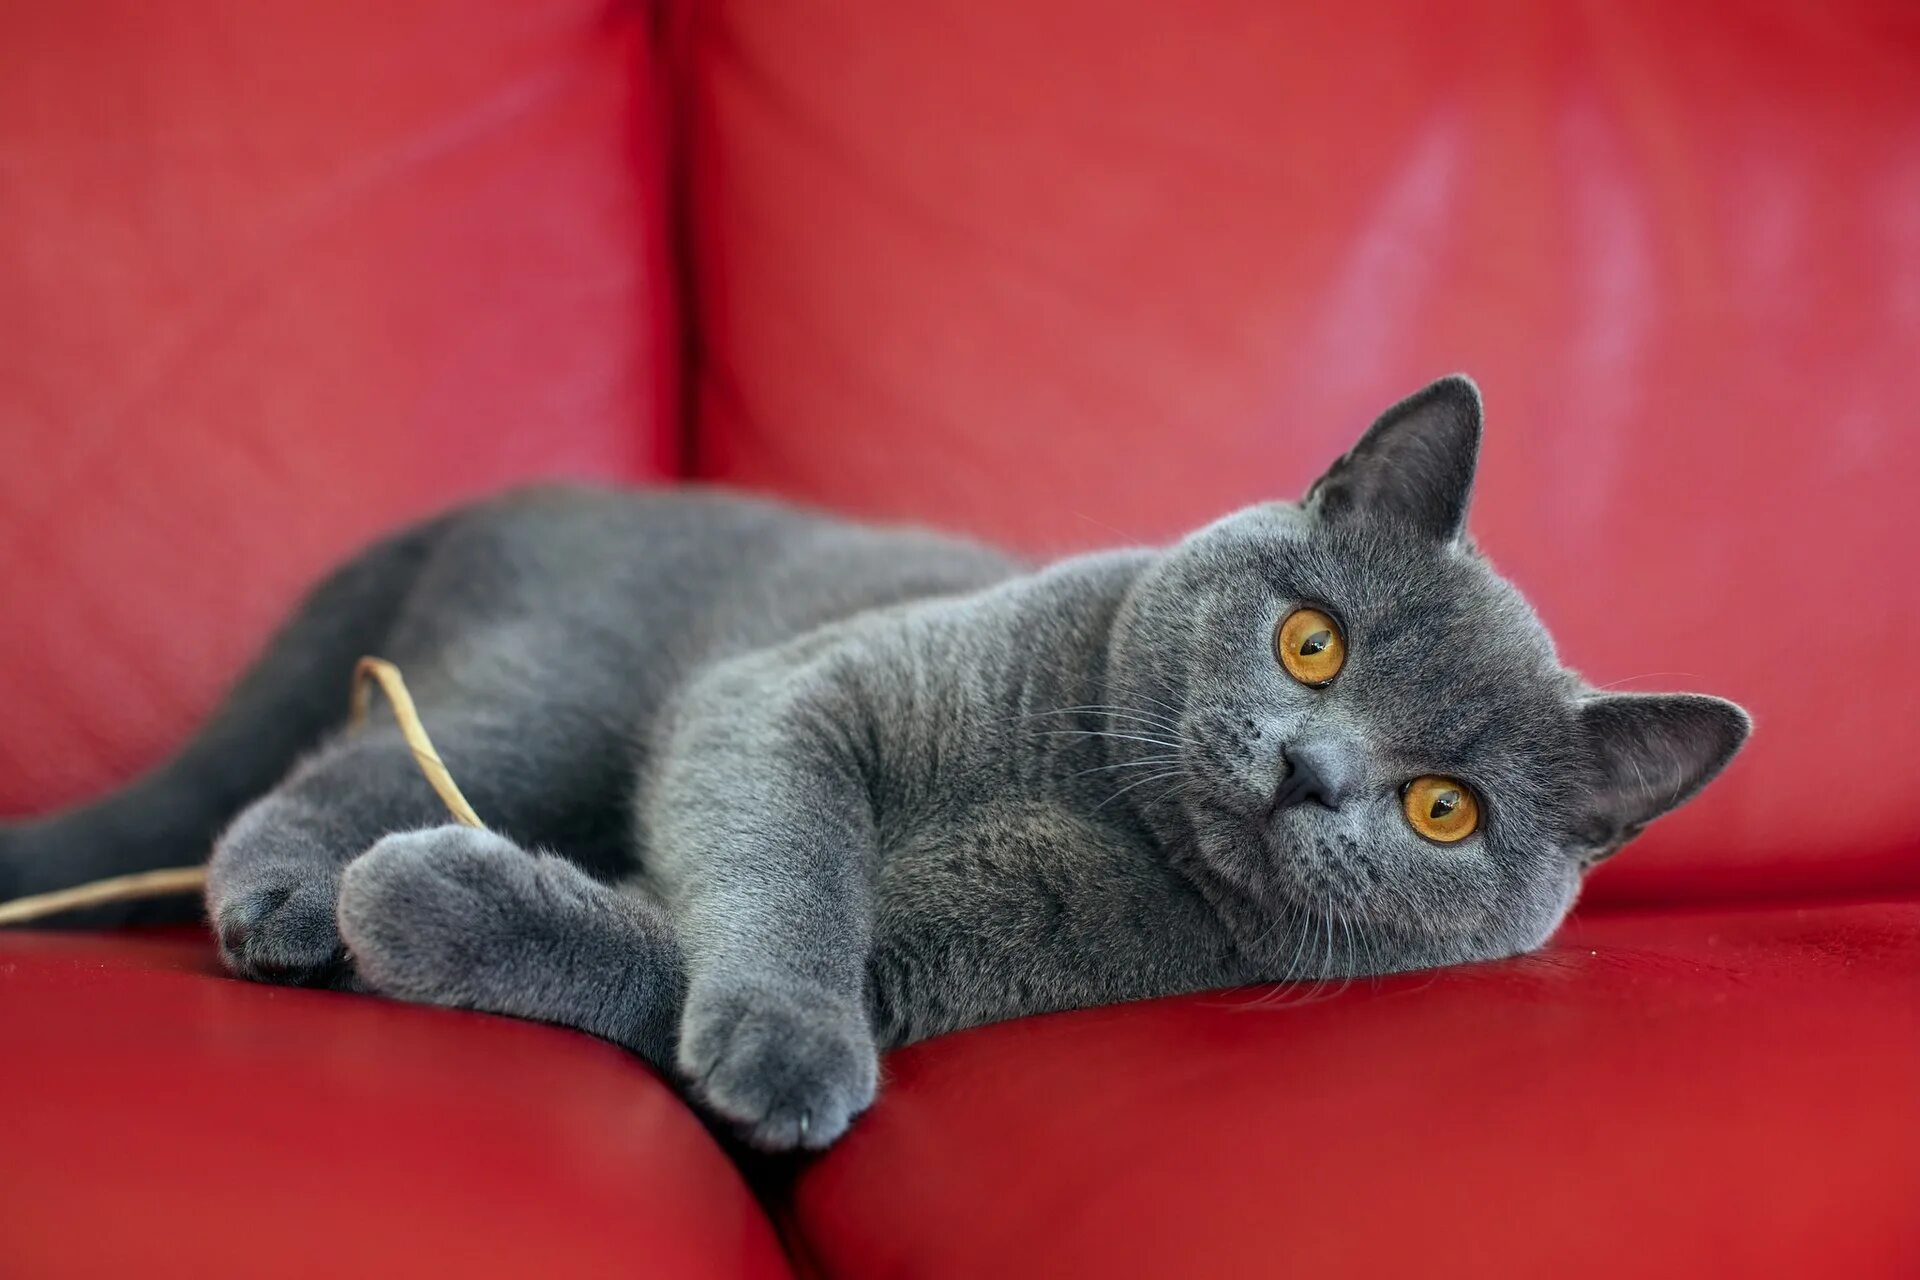 Фотографии породы британских кошек. Британская короткошёрстная кошка. Британская короткошёрстная кошка шартрез. Британская короткошёрстная British Shorthair. Британская короткошёрстная кошка прямоухая.